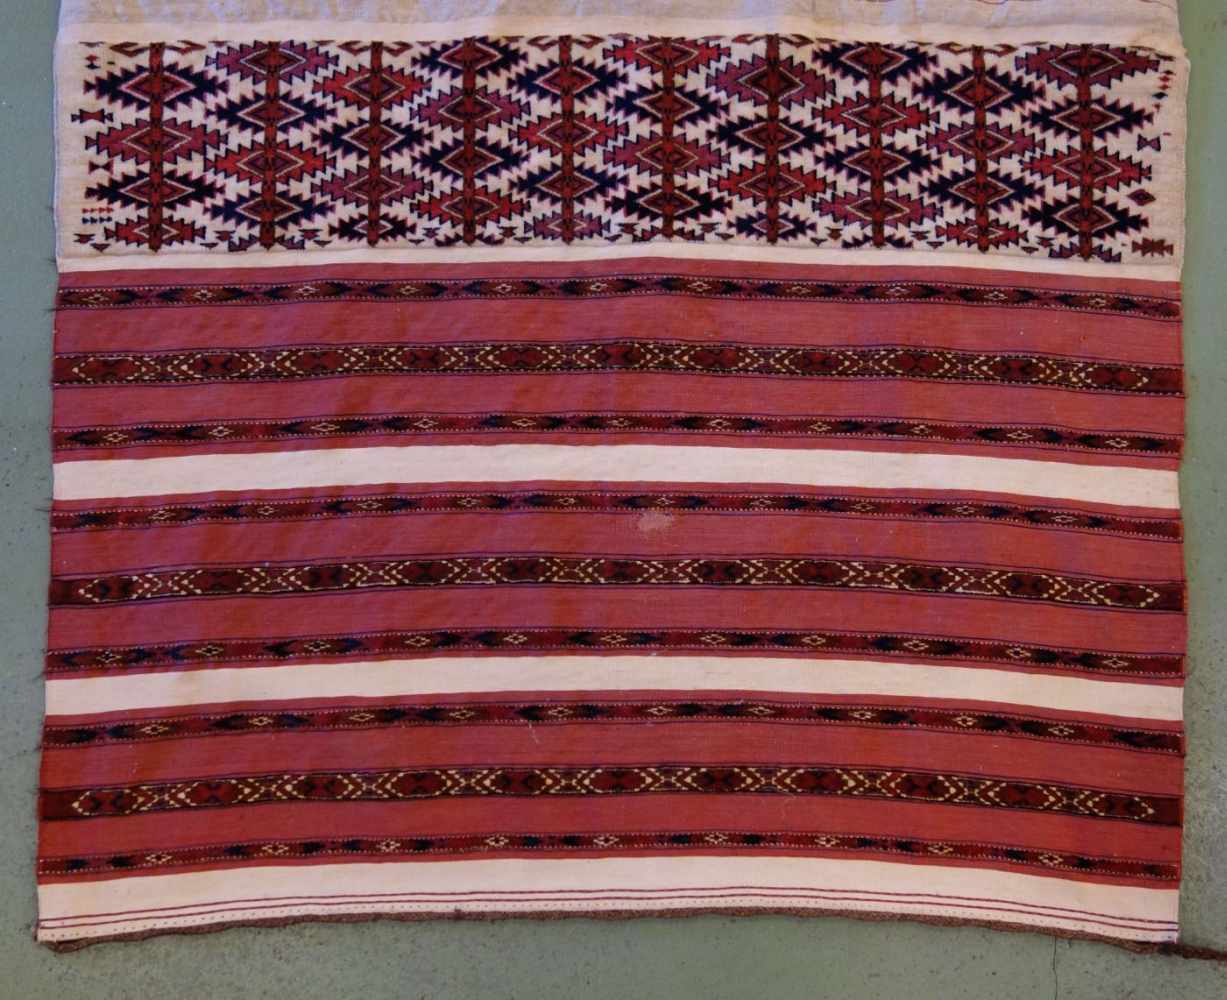 TEKKE AK-TSCHOWAL / TEPPICH / carpet, Turkmenistan, wohl 2. H. 19. Jh., Wechsel von Flor und - Bild 2 aus 18